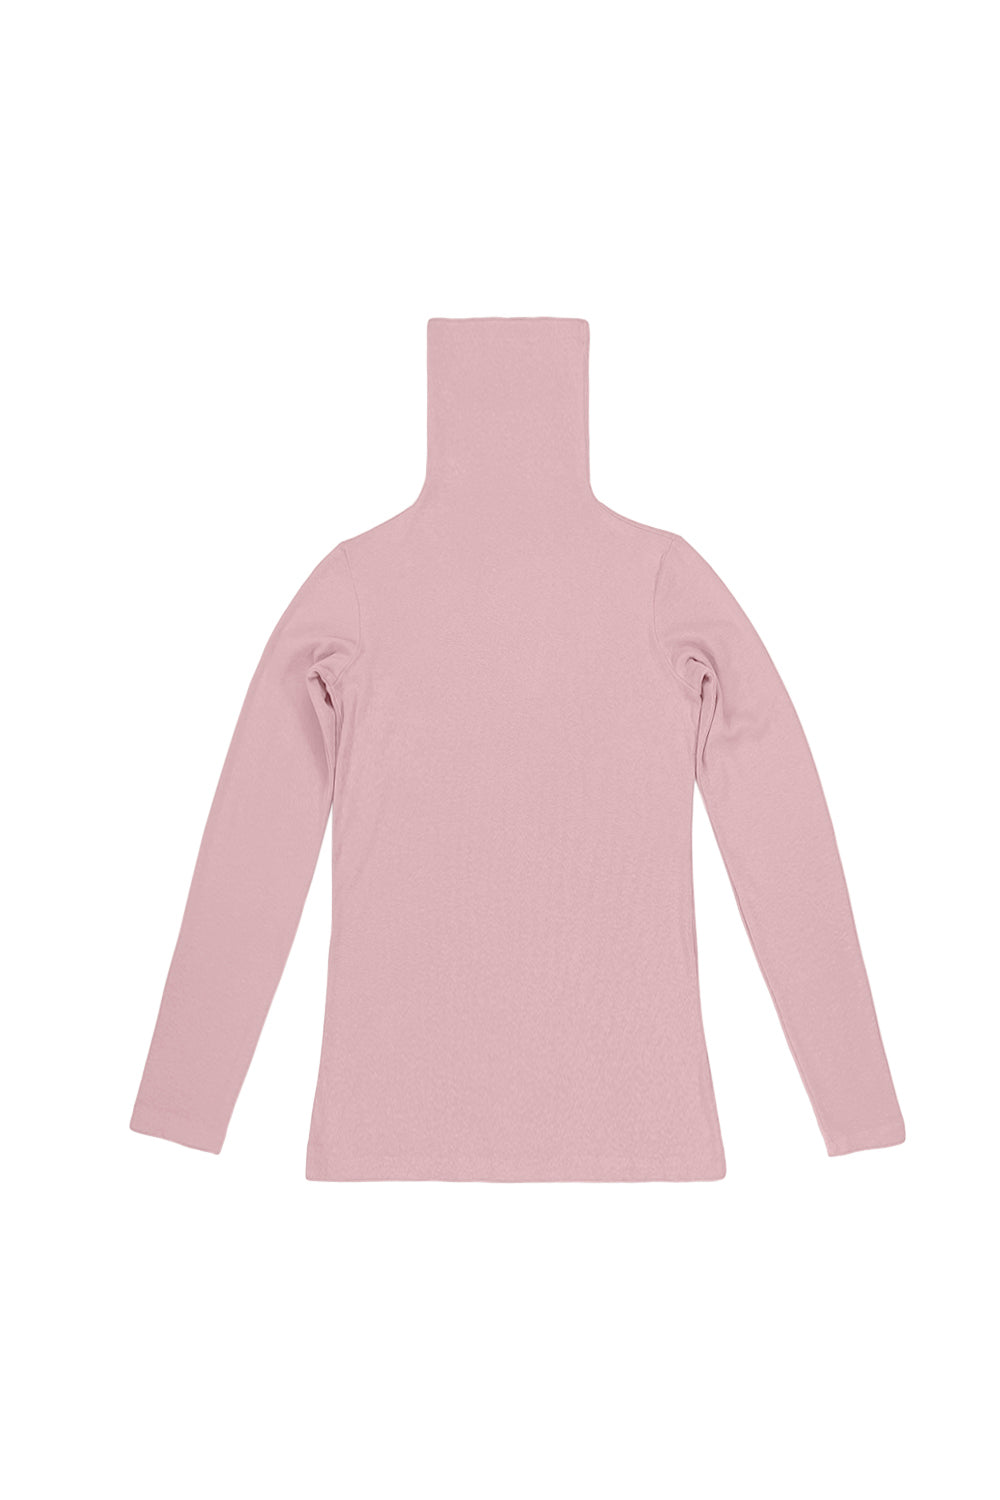 Whidbey Turtleneck | Jungmaven Hemp Clothing & Accessories / Color: Rose Quartz